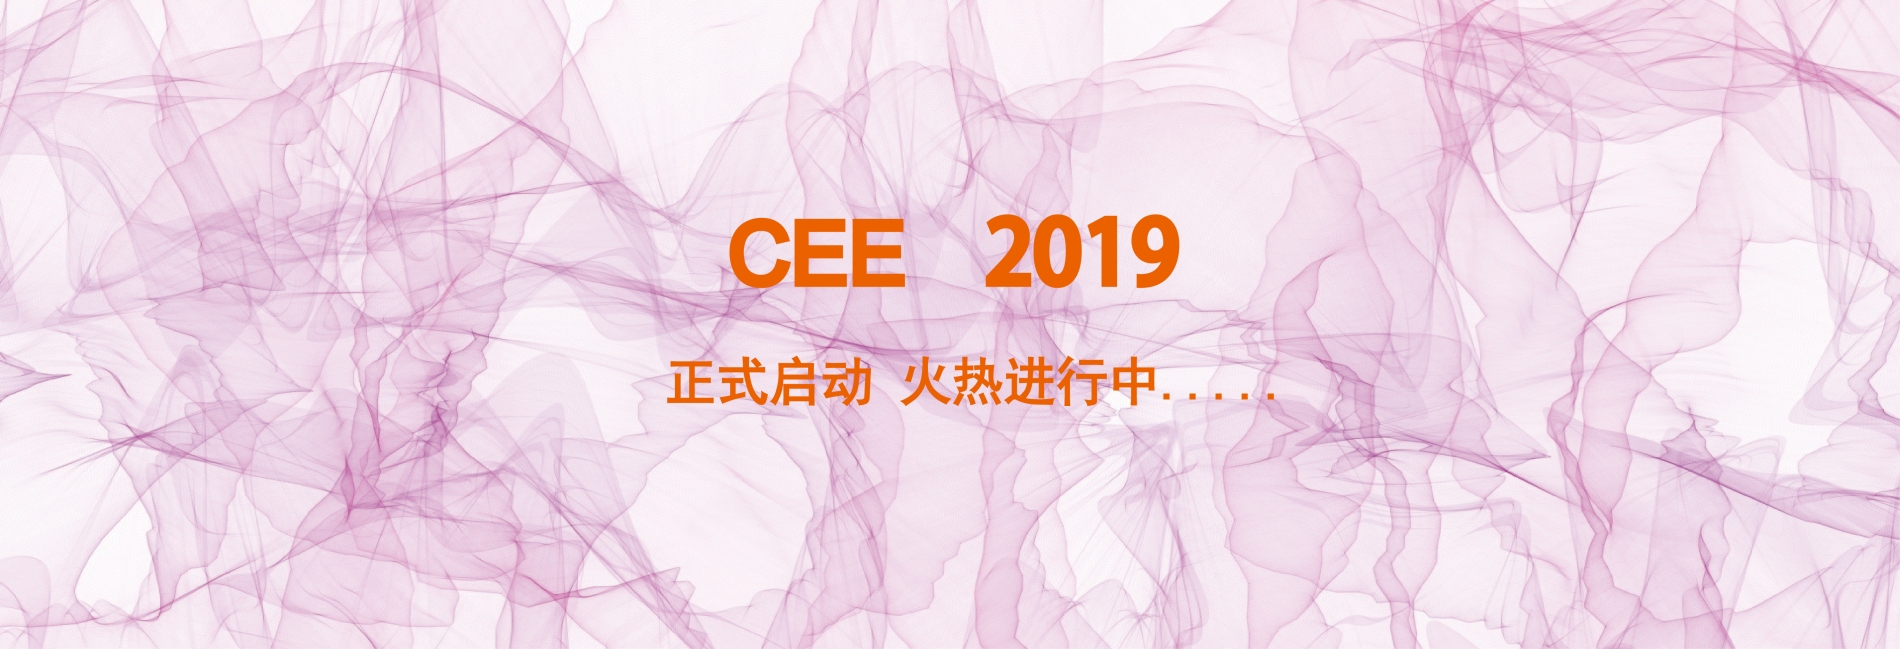 2019年北京国际消费电子展